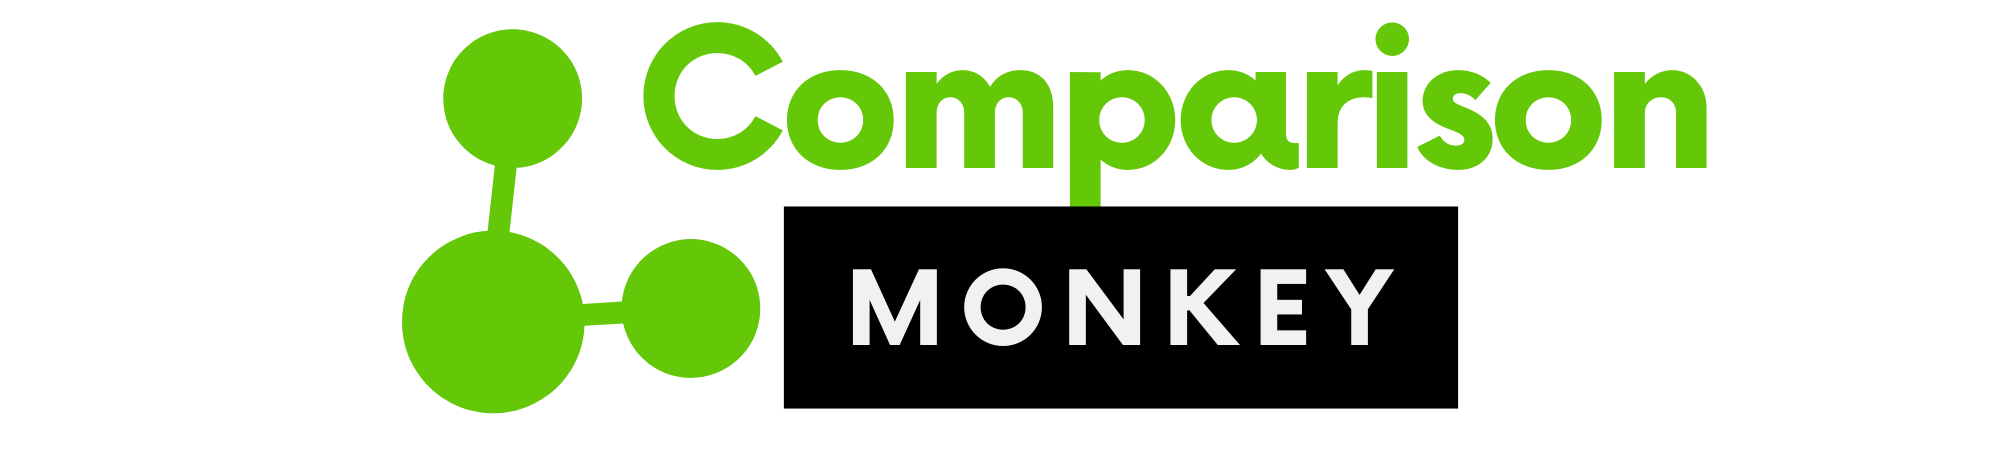 Comparison Monkey